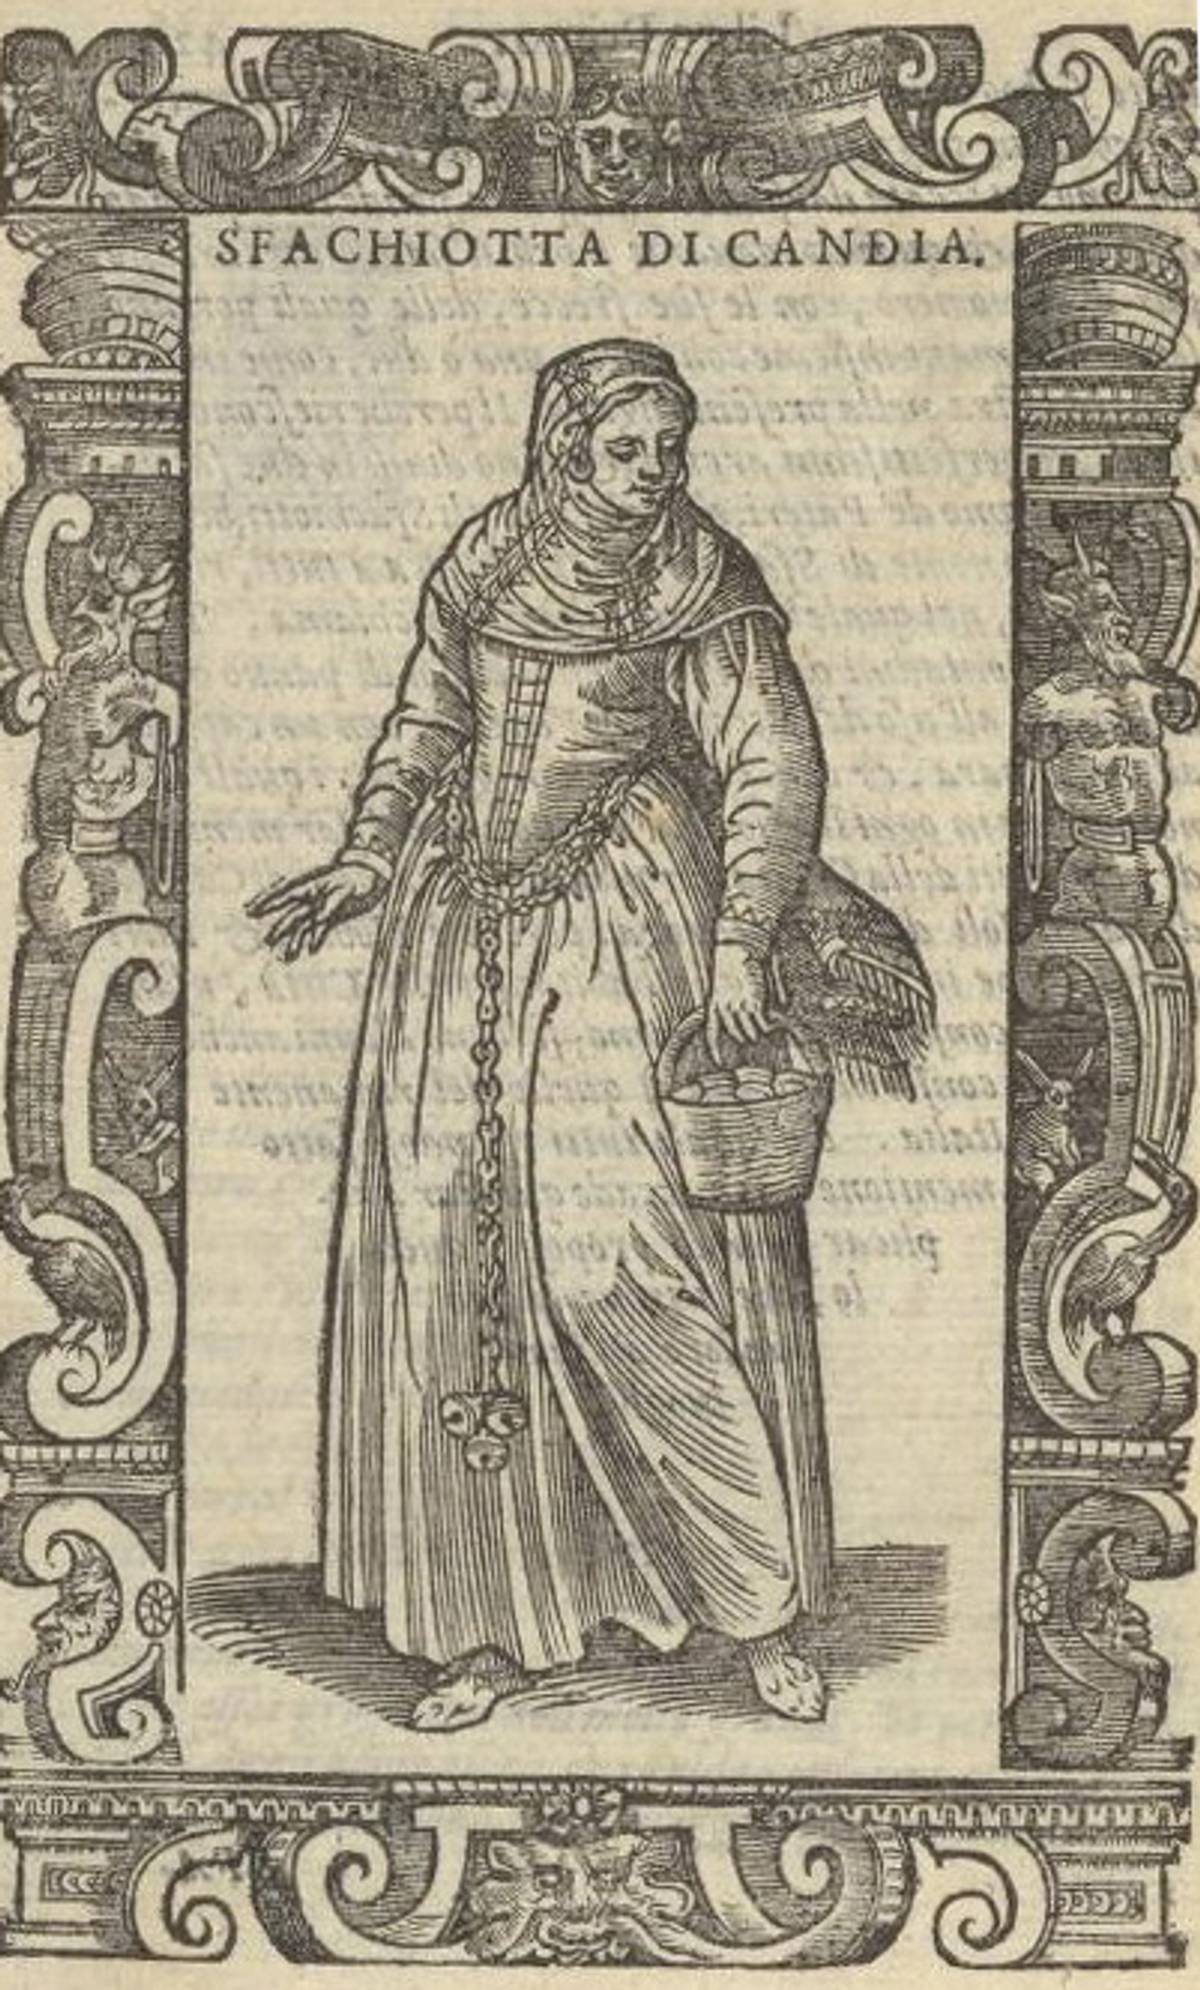 Cesare Vecellio, ‘De gli habiti antichi et moderni,’ Venice, 1598 (Rare Books and Special Collections, Library of Congress.)